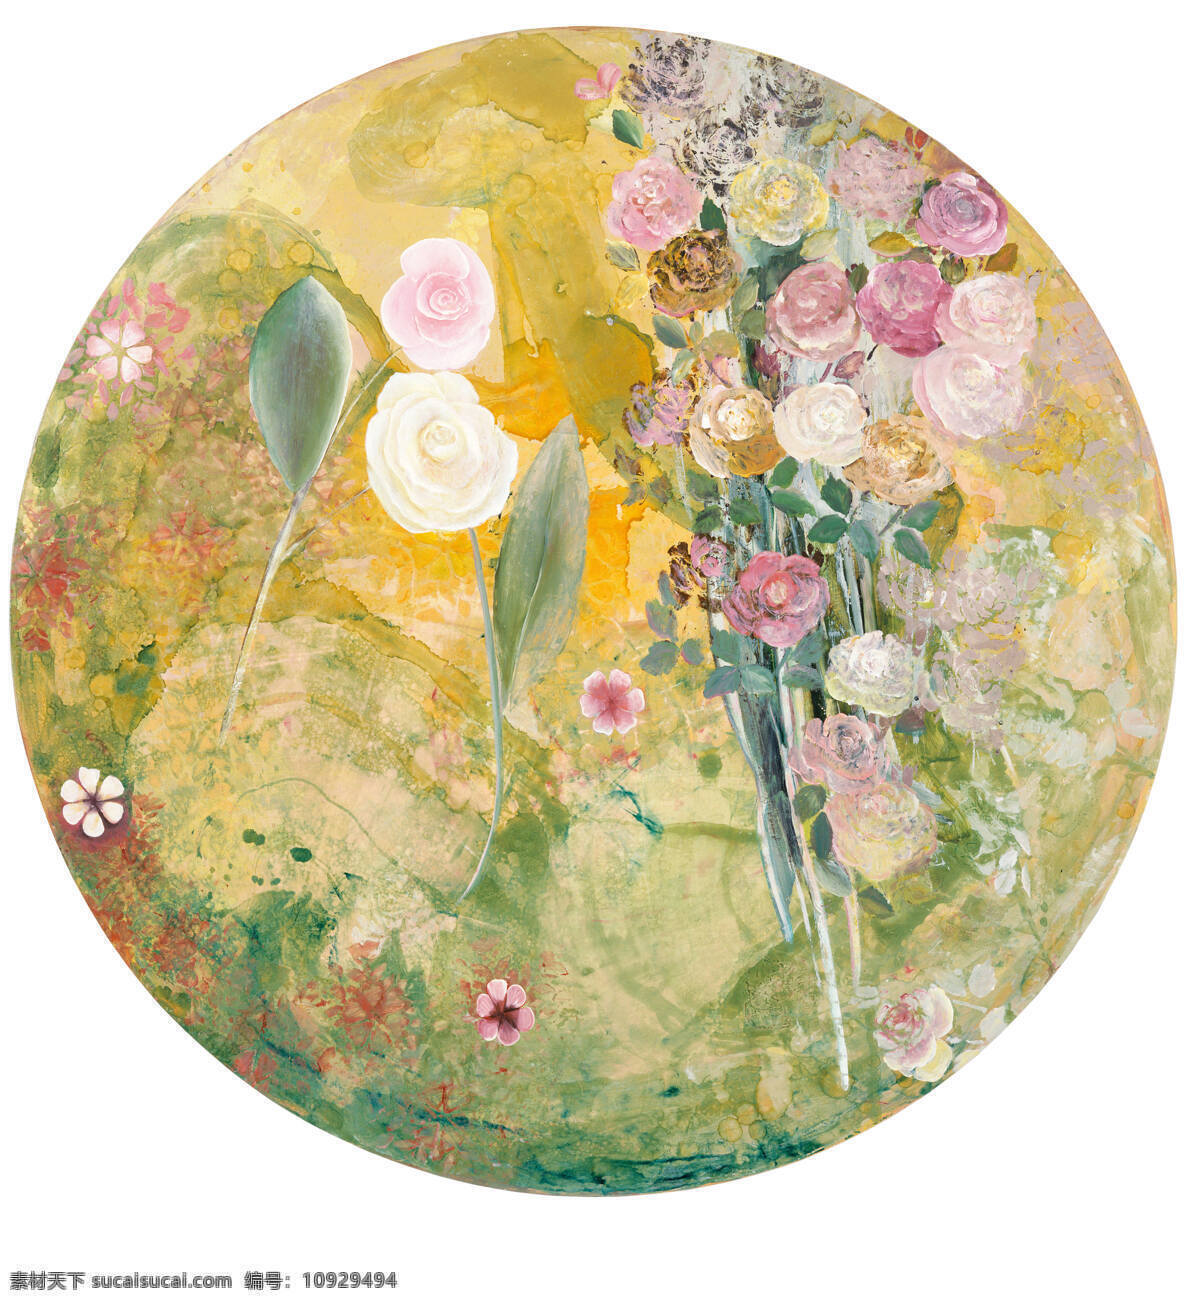 静物鲜花 野外 阳光照射下 岩石缝隙 野玫瑰 粉色 白色 紫色 20世纪油画 油画 文化艺术 绘画书法